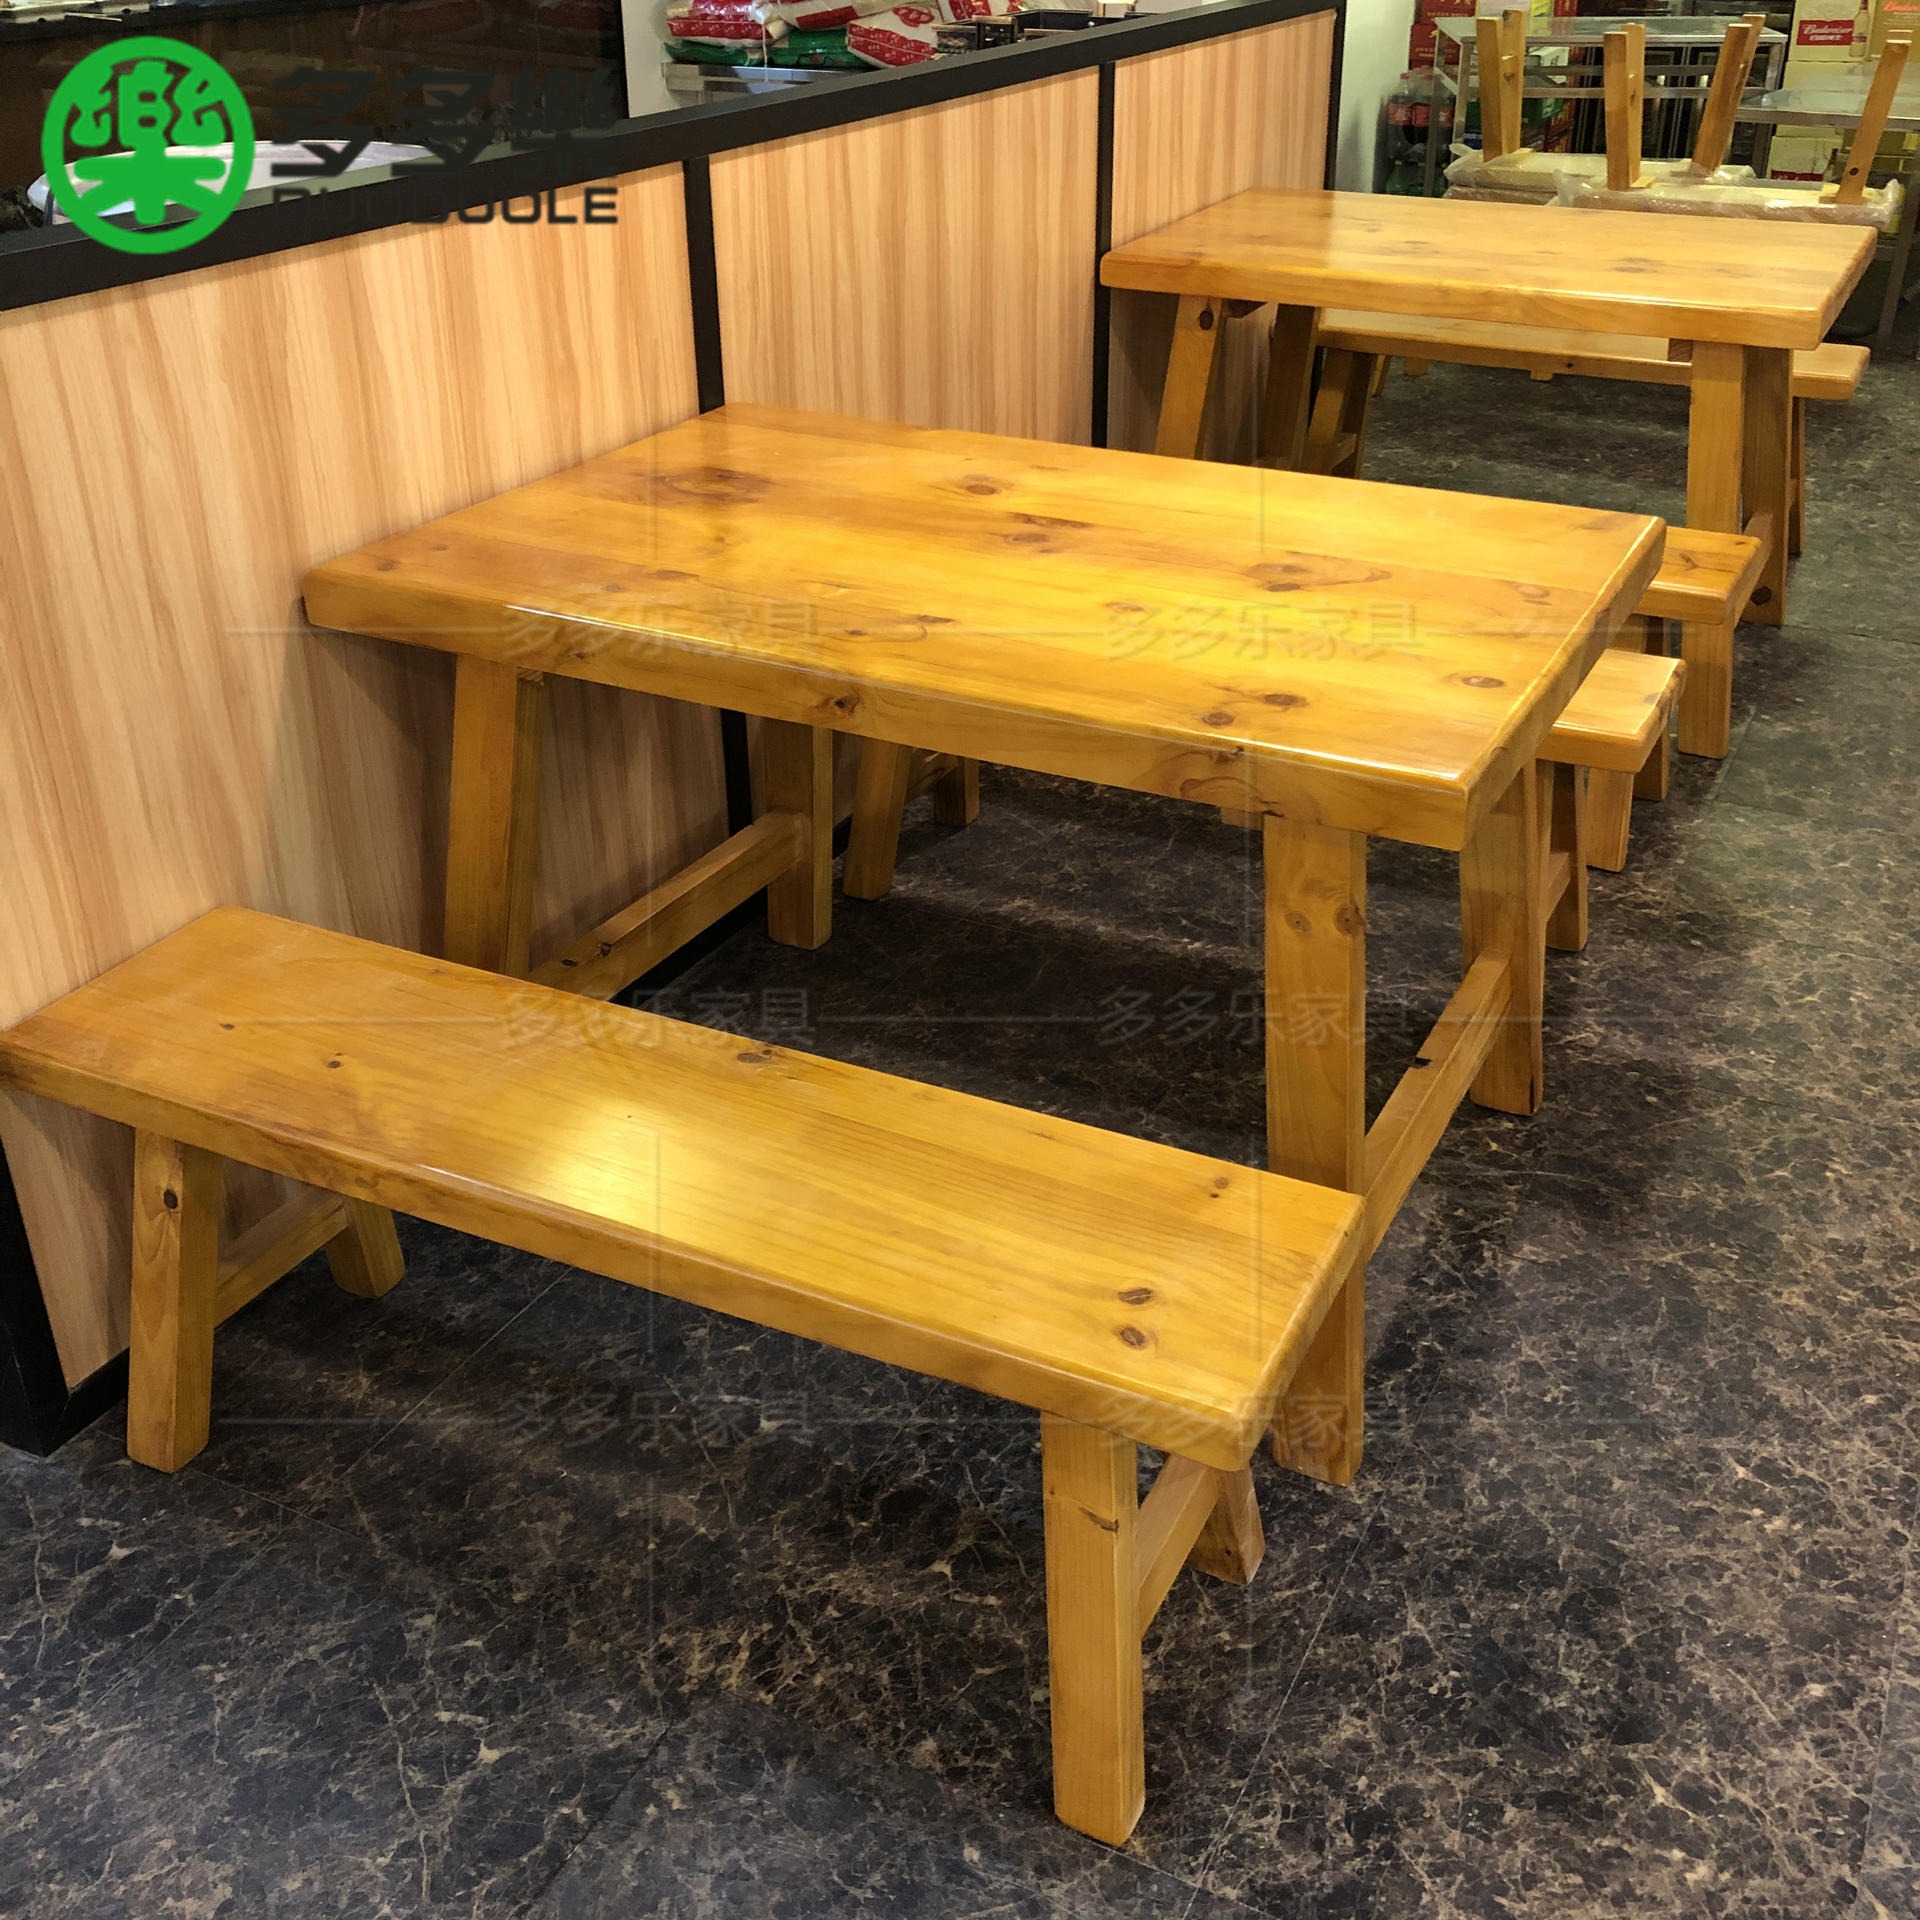 中式烧烤餐厅桌椅 木屋烧烤款式桌子板凳 新西兰松实木八字脚大板桌子